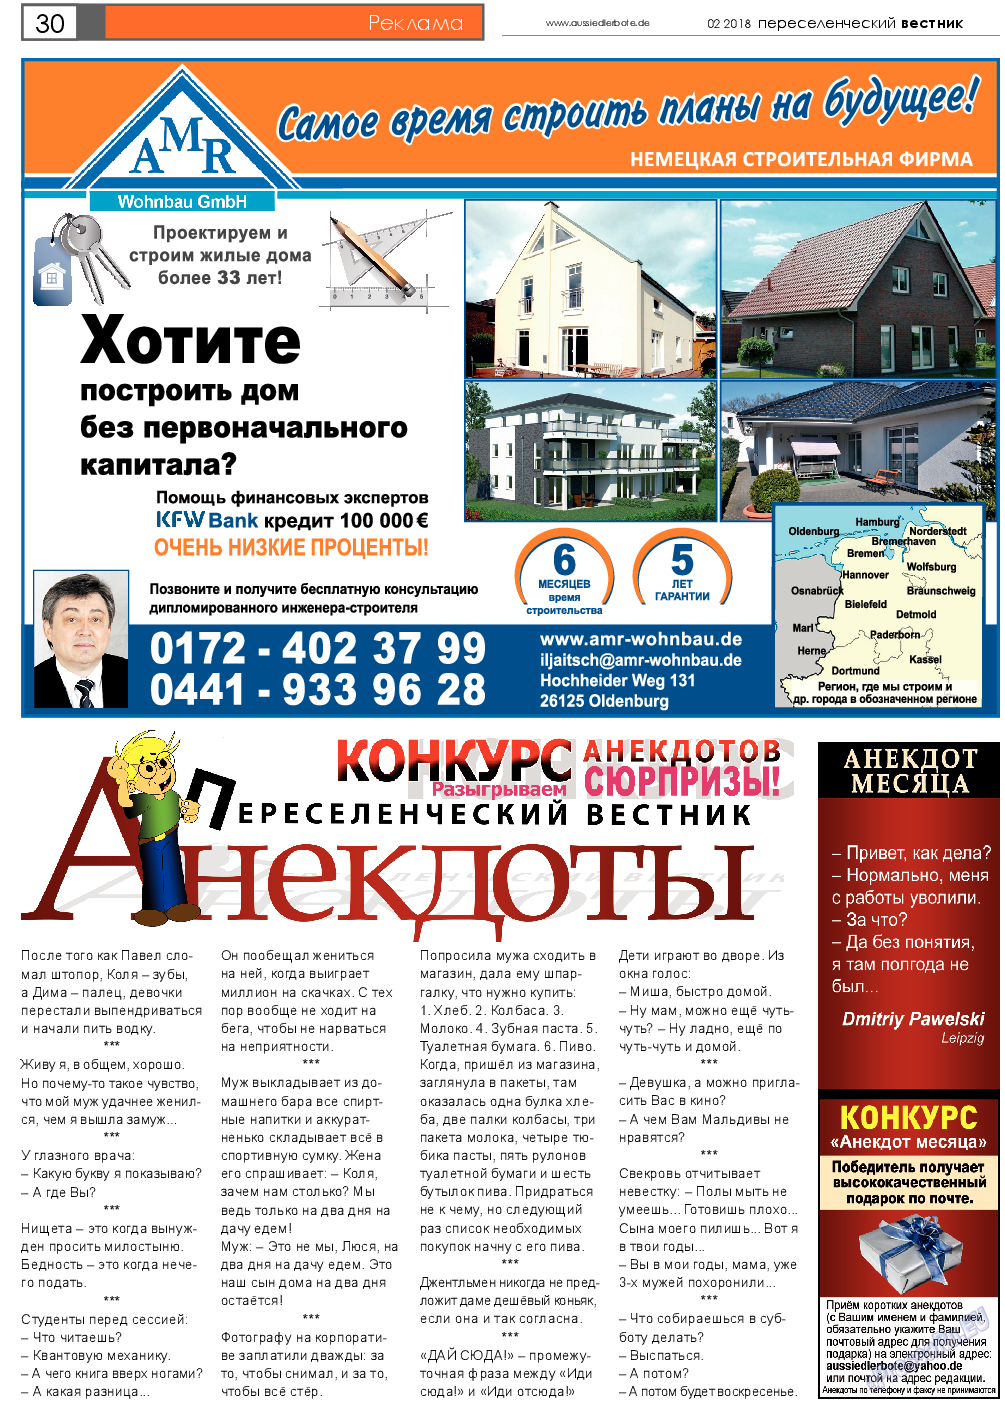 Переселенческий вестник (газета). 2018 год, номер 2, стр. 30